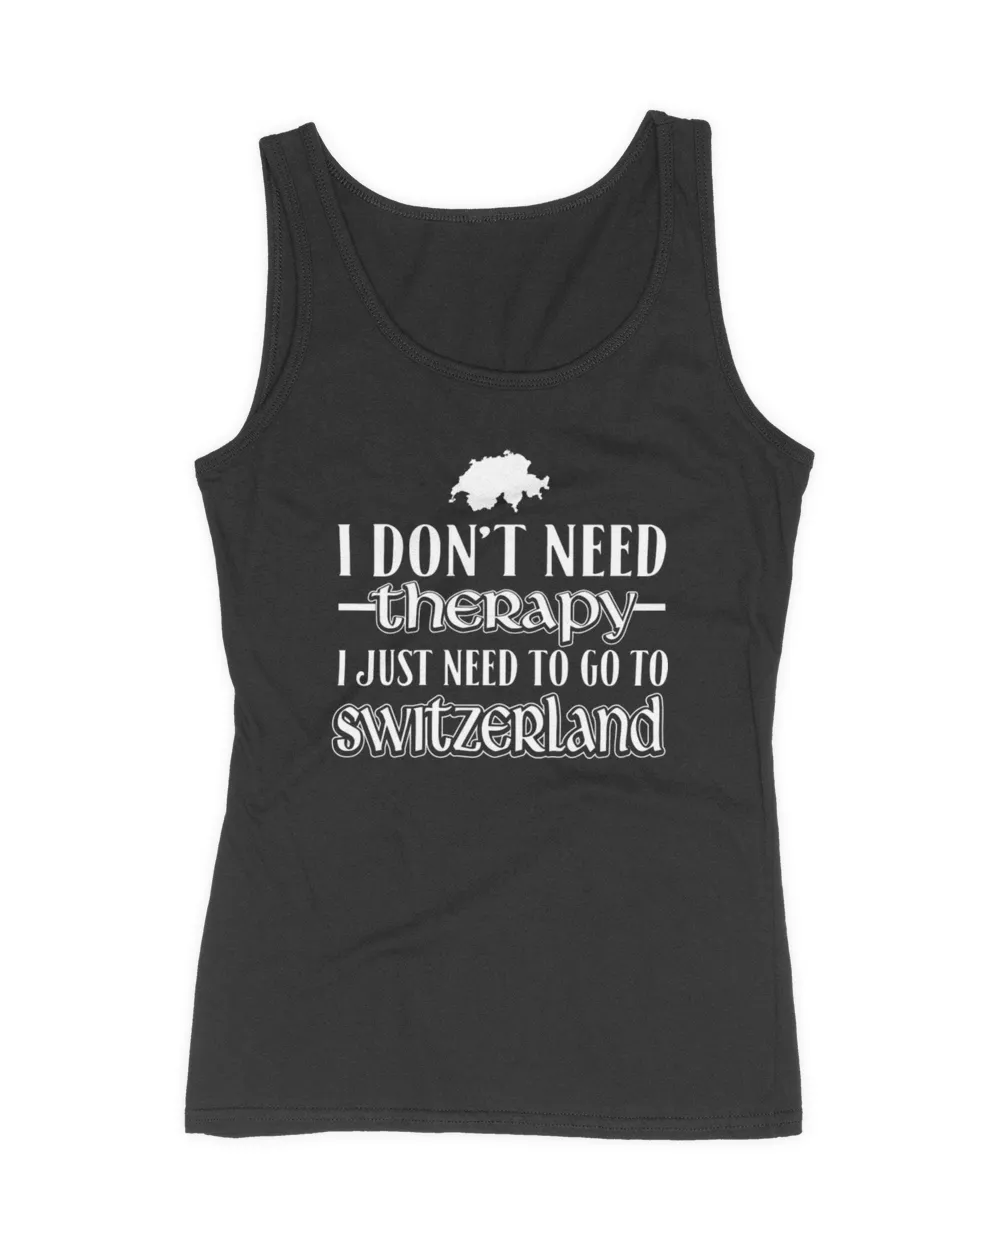 Switzerland - I just need to go to switzerland tee